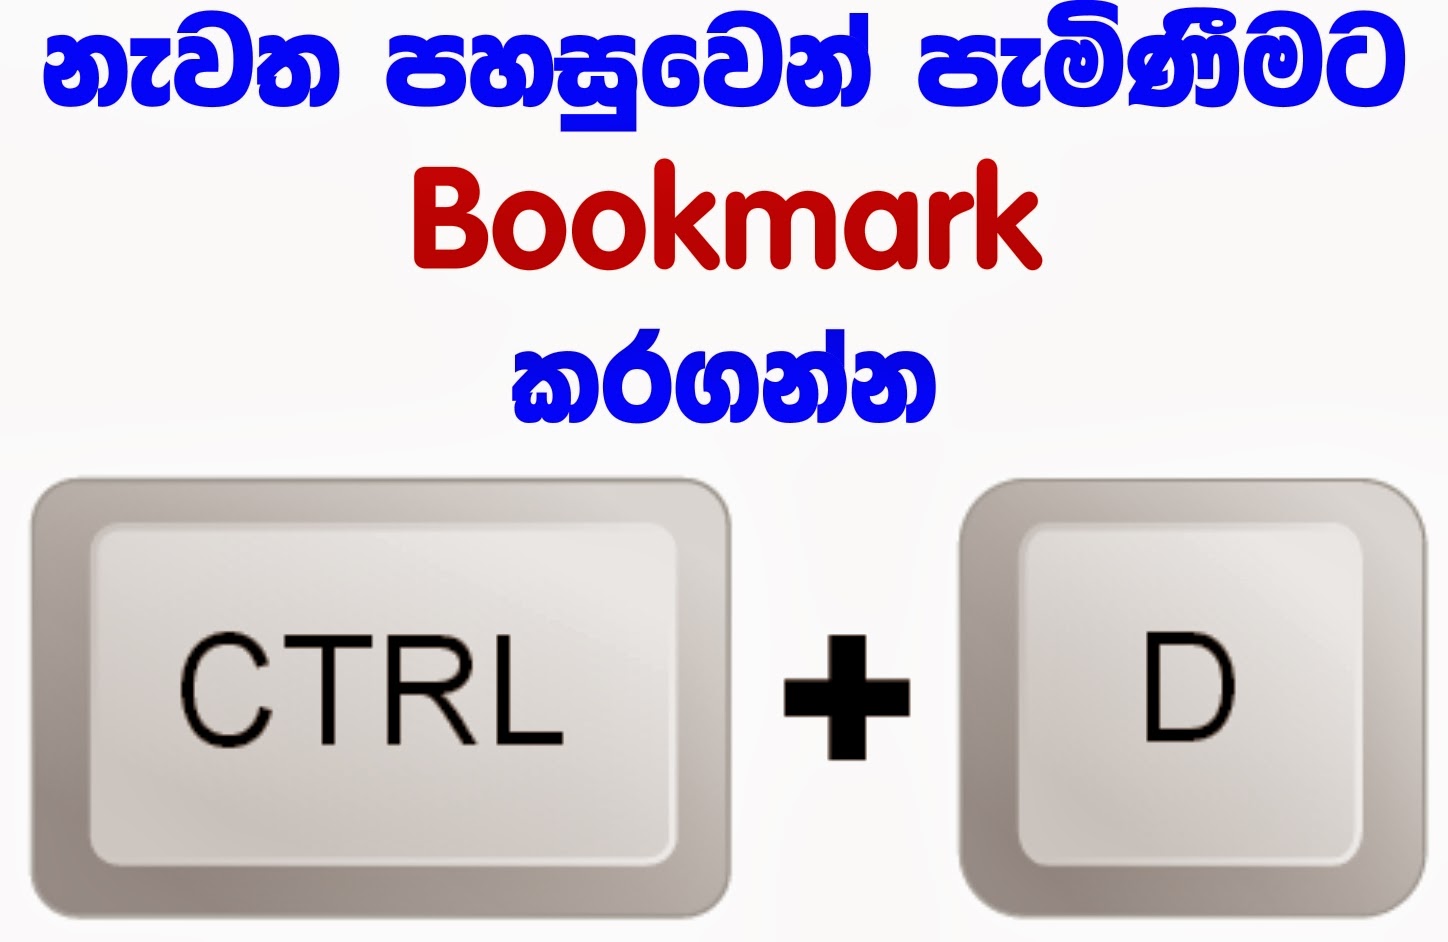 Bookmark now